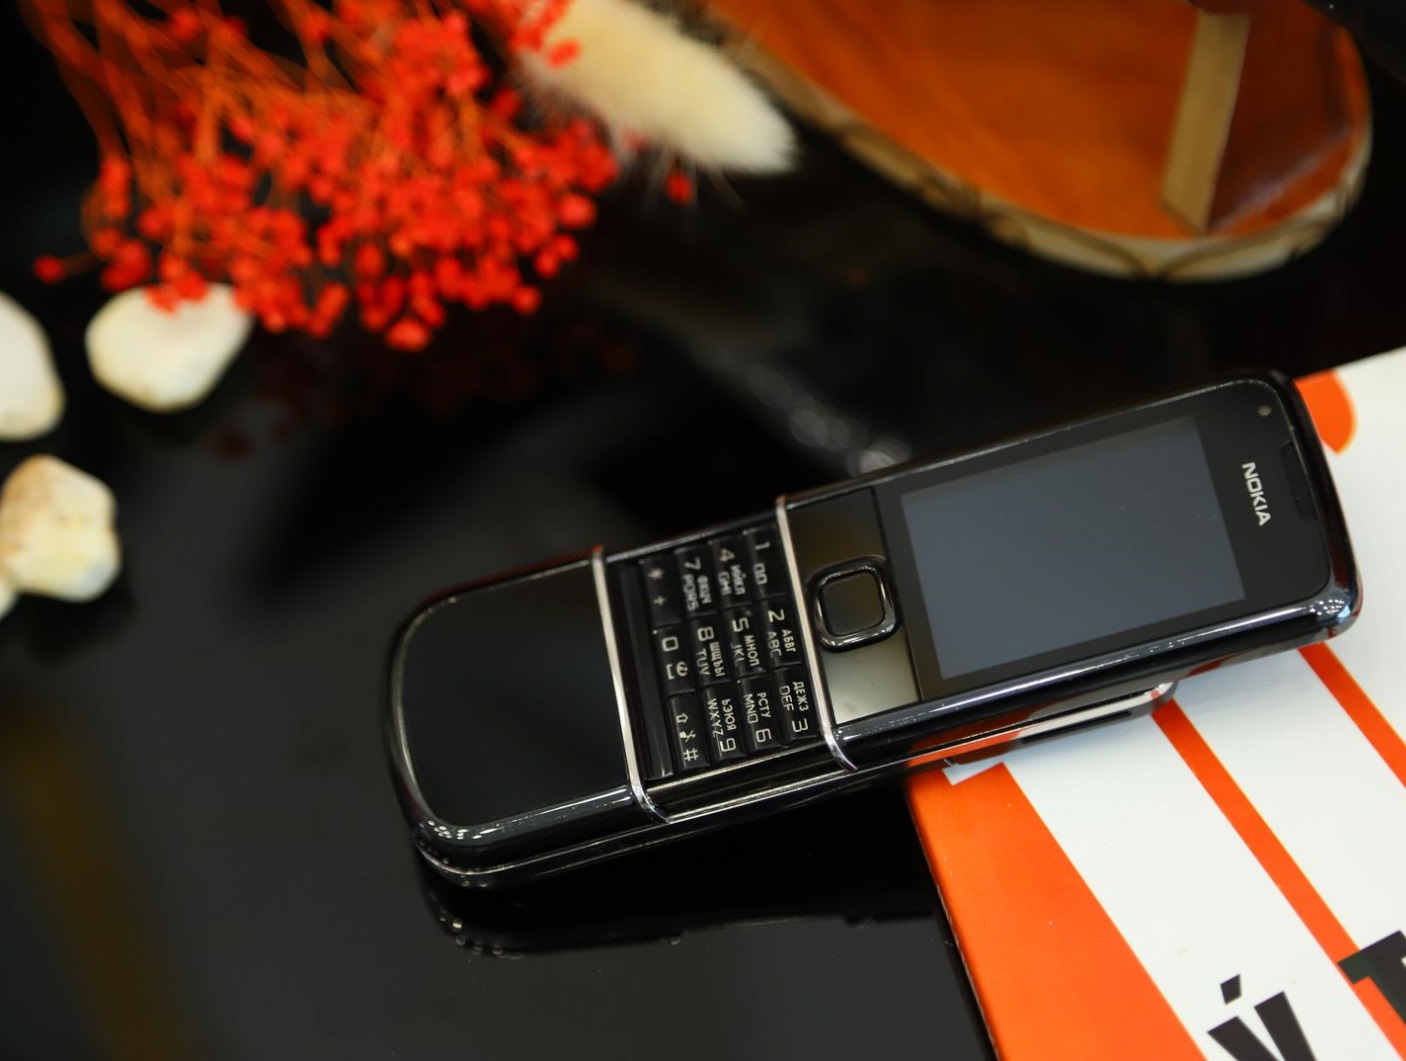 Điện thoại Nokia 8800 Black Gold Arte vỏ vàng 24k